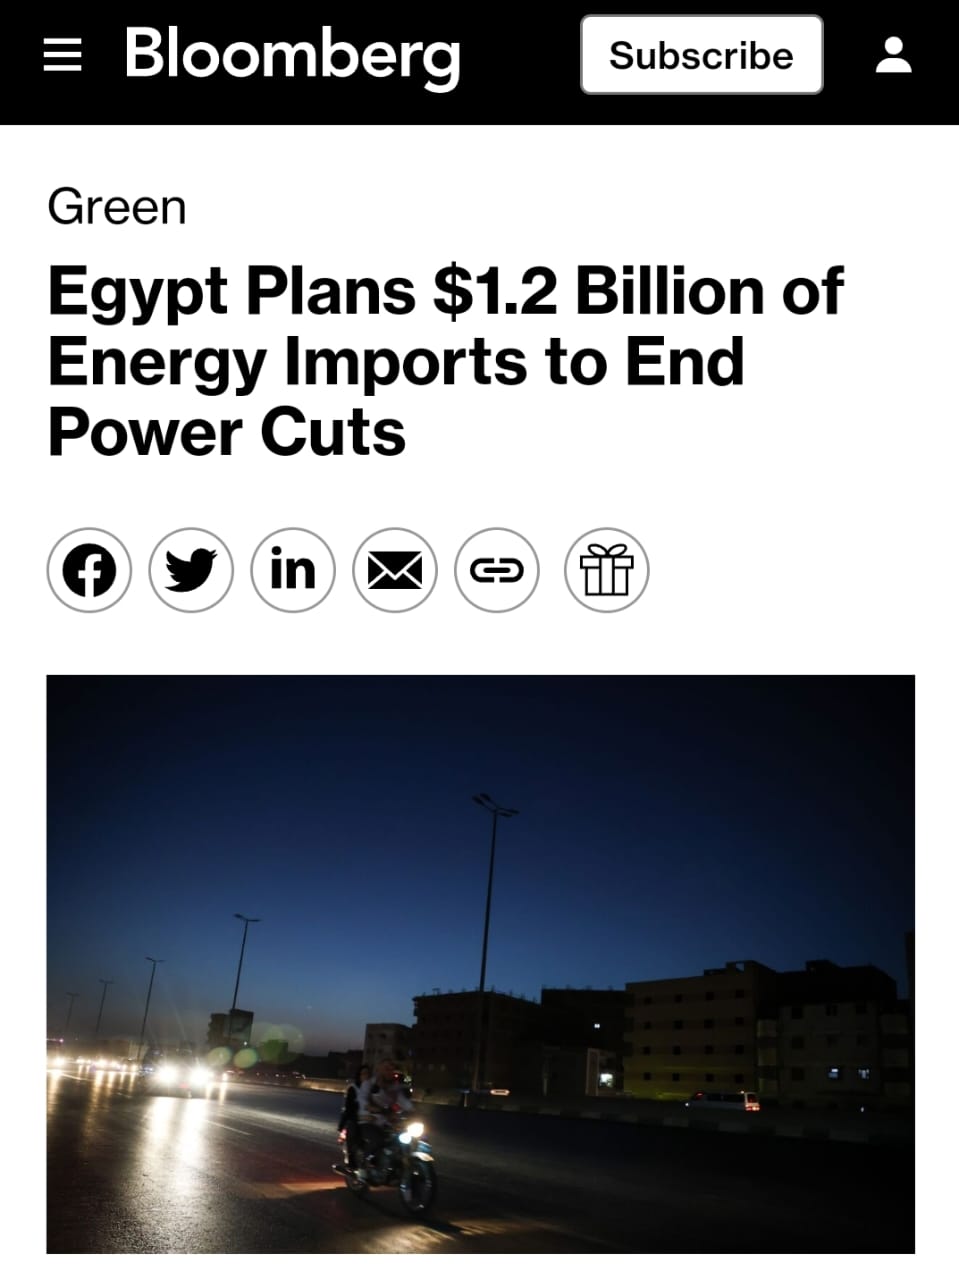 بلومبرج: مصر تخطط لتخصيص 1.2 مليار دولار لاستيراد الغاز للقضاء على انقطاع الكهرباء